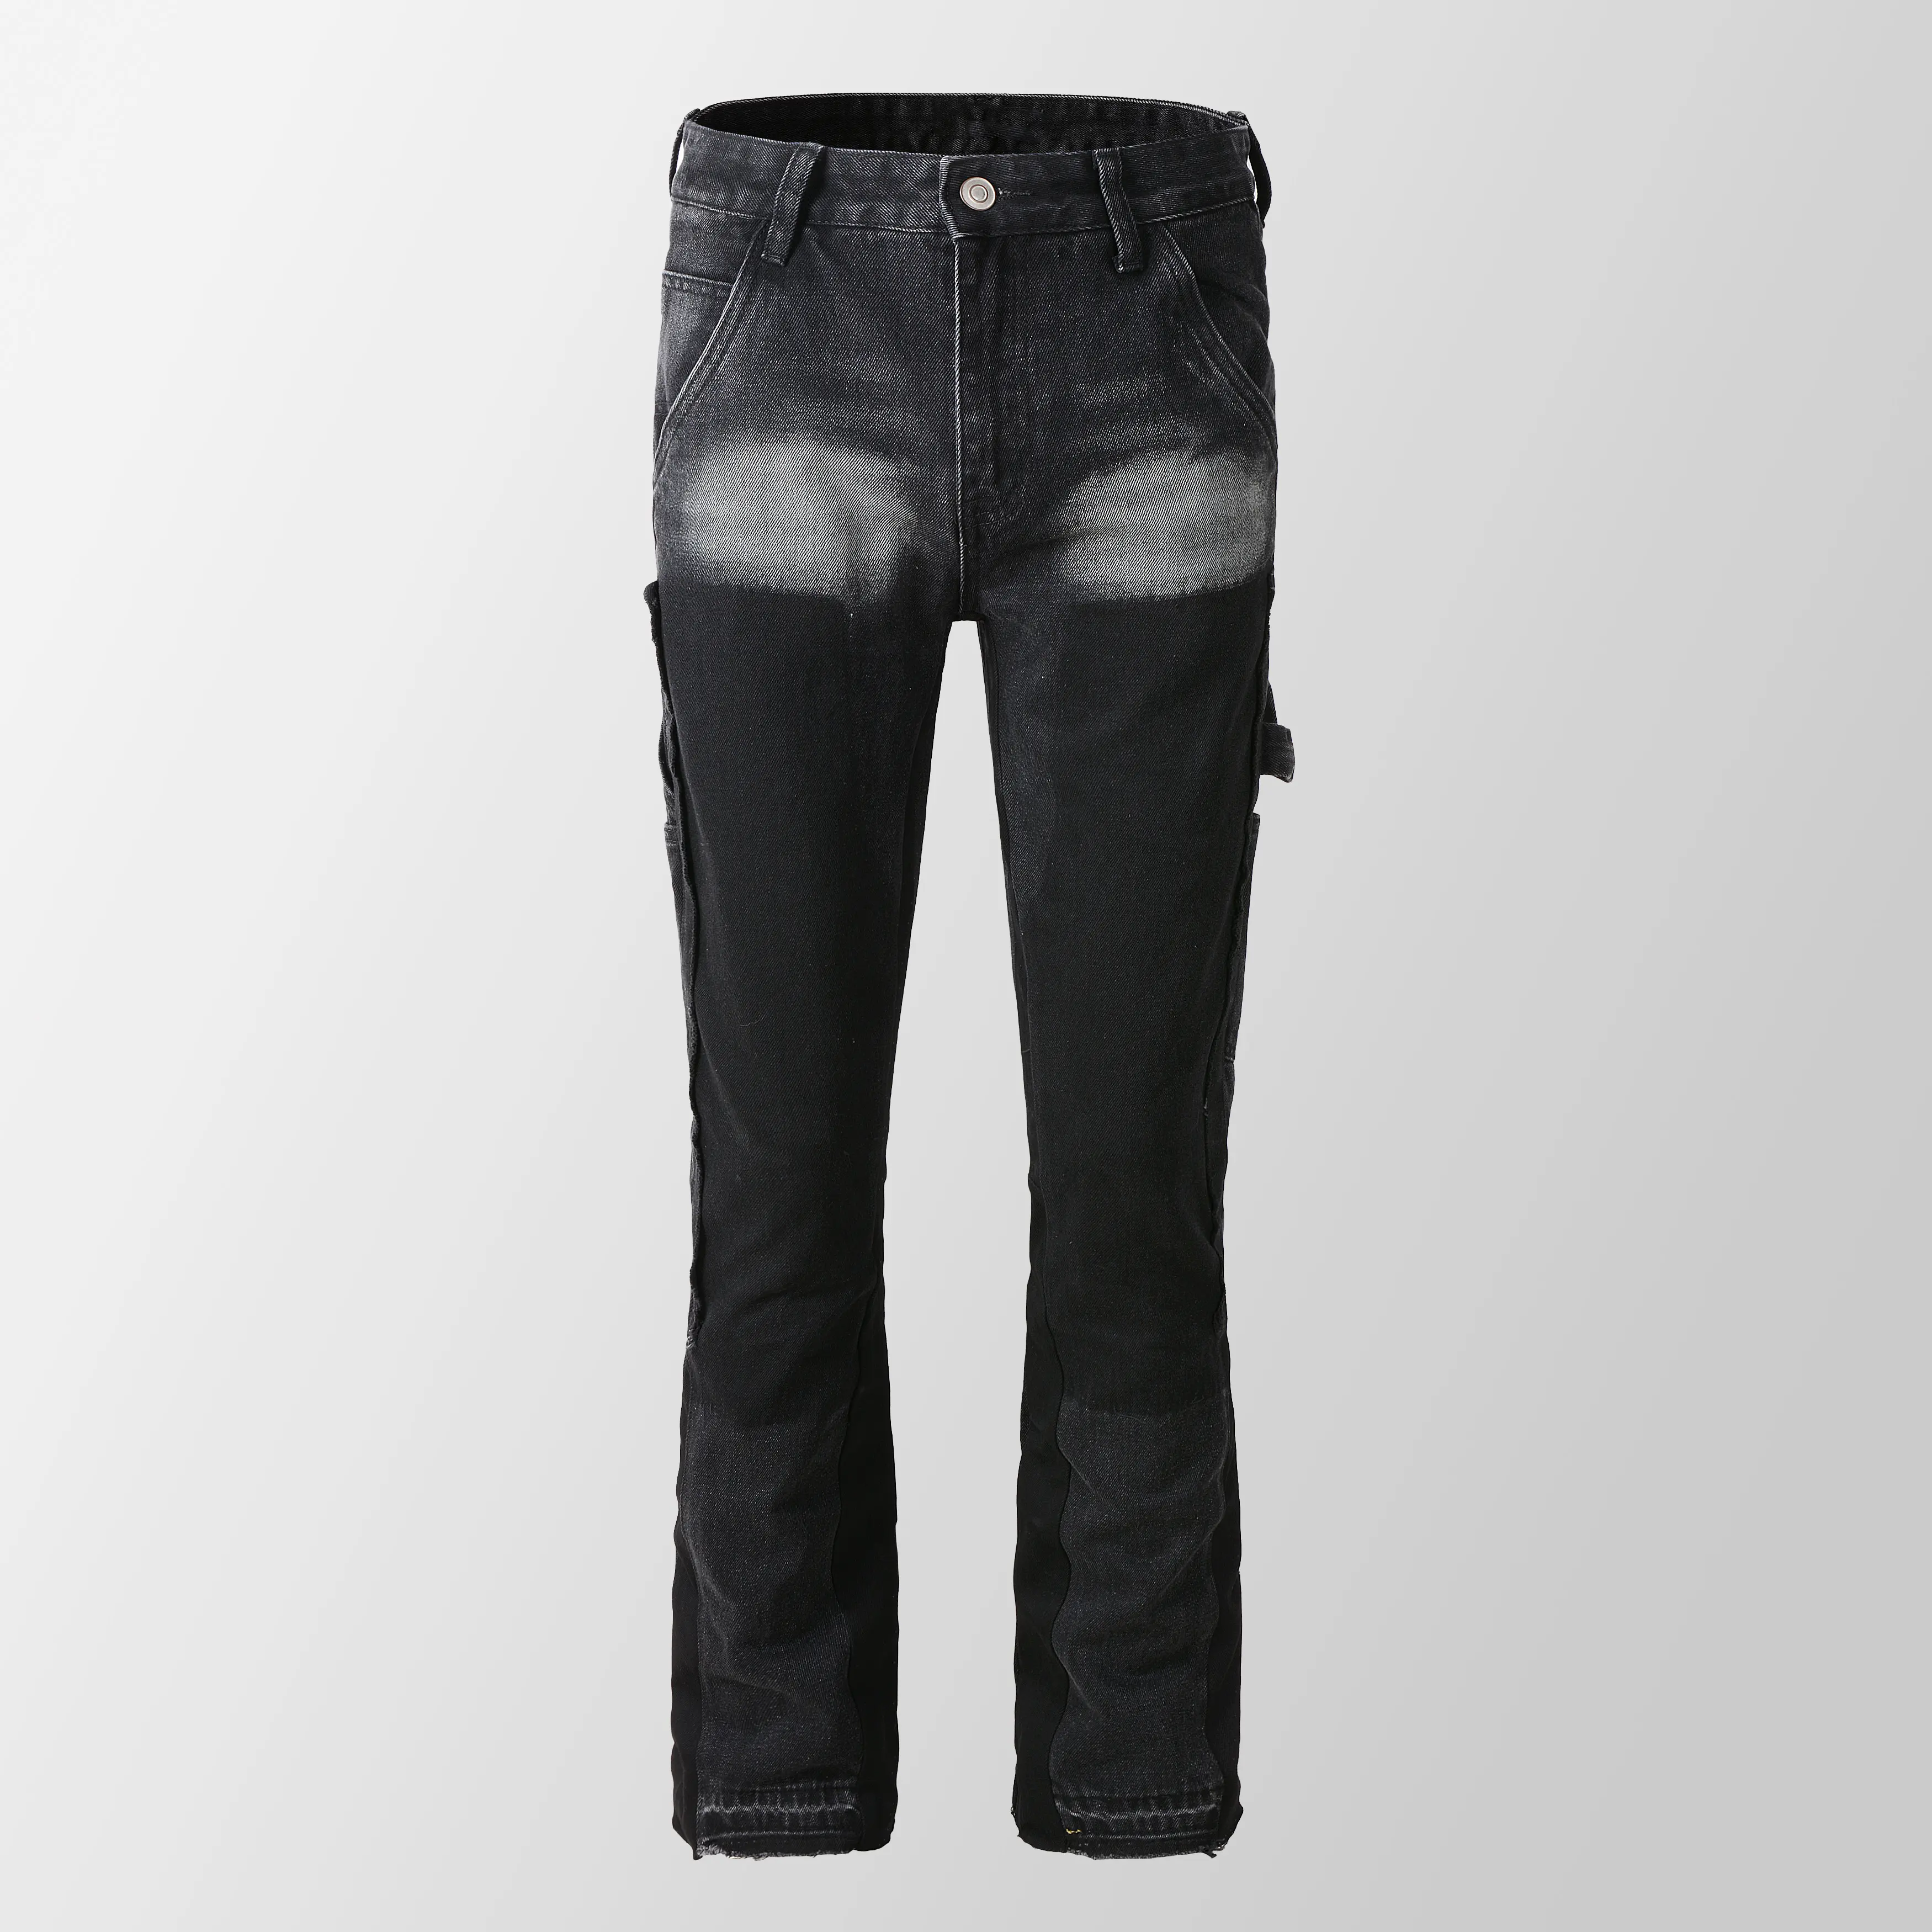 9303 Новые Модные индивидуальные уложенные джинсы мужские расслабленные расклешенные джинсы сложенные брюки для мужчин